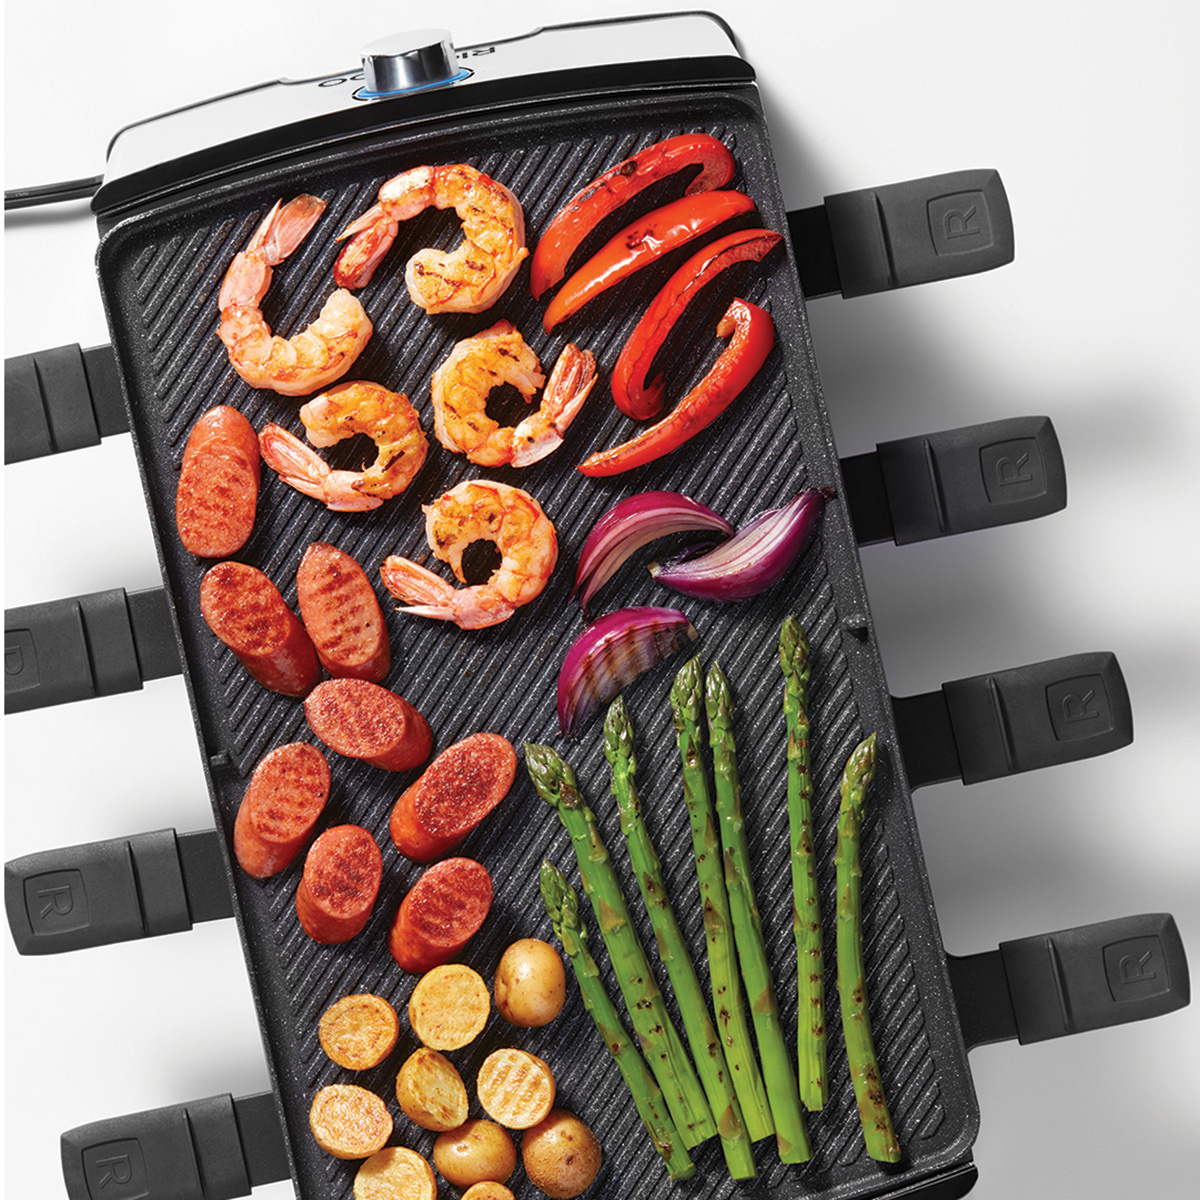 Raclettes et accessoires - Ares Accessoires de cuisine